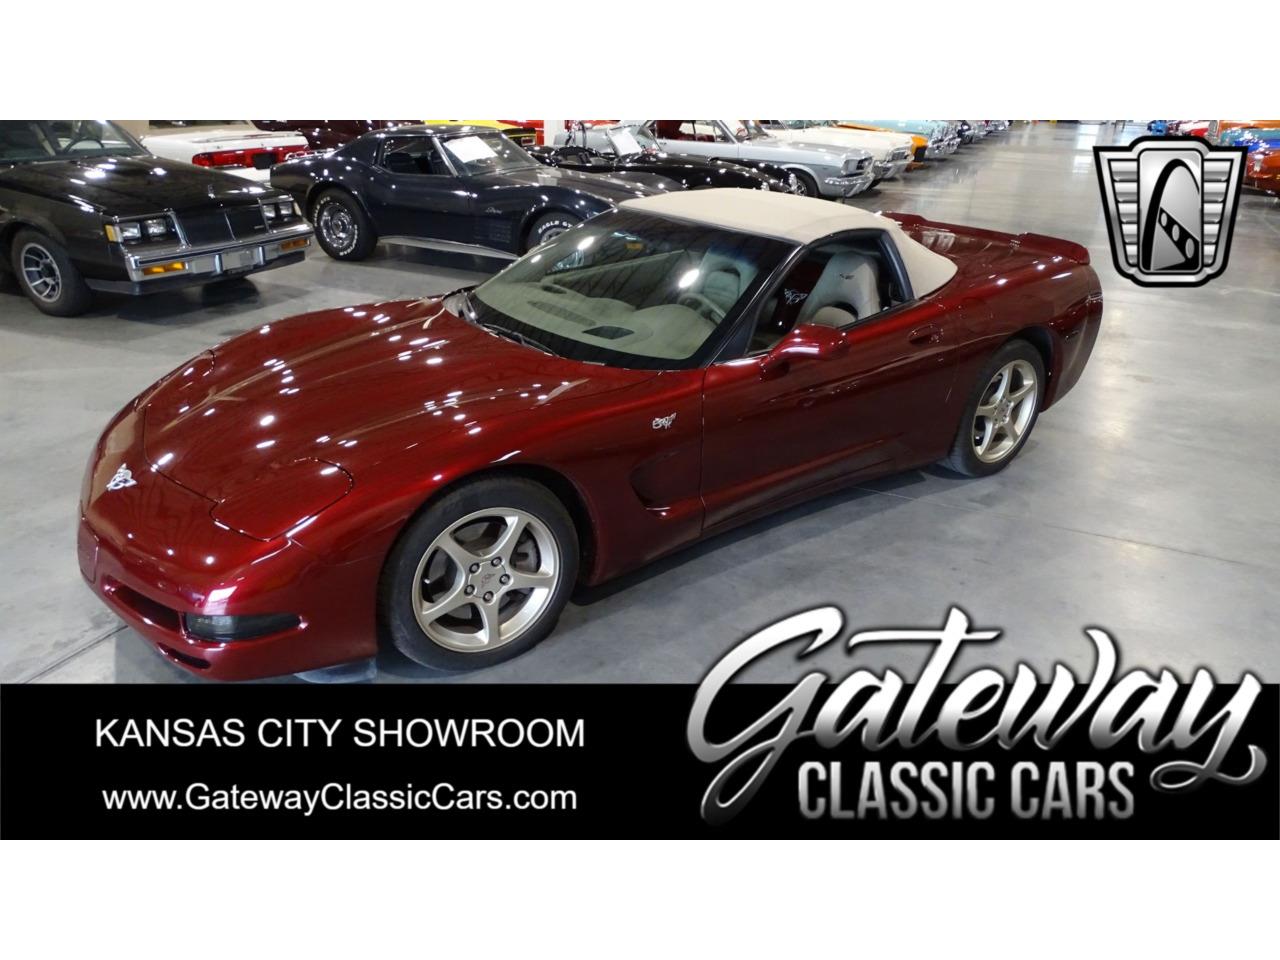 For Sale: 2003 Chevrolet Corvette in O'Fallon, Illinois for sale in O Fallon, IL